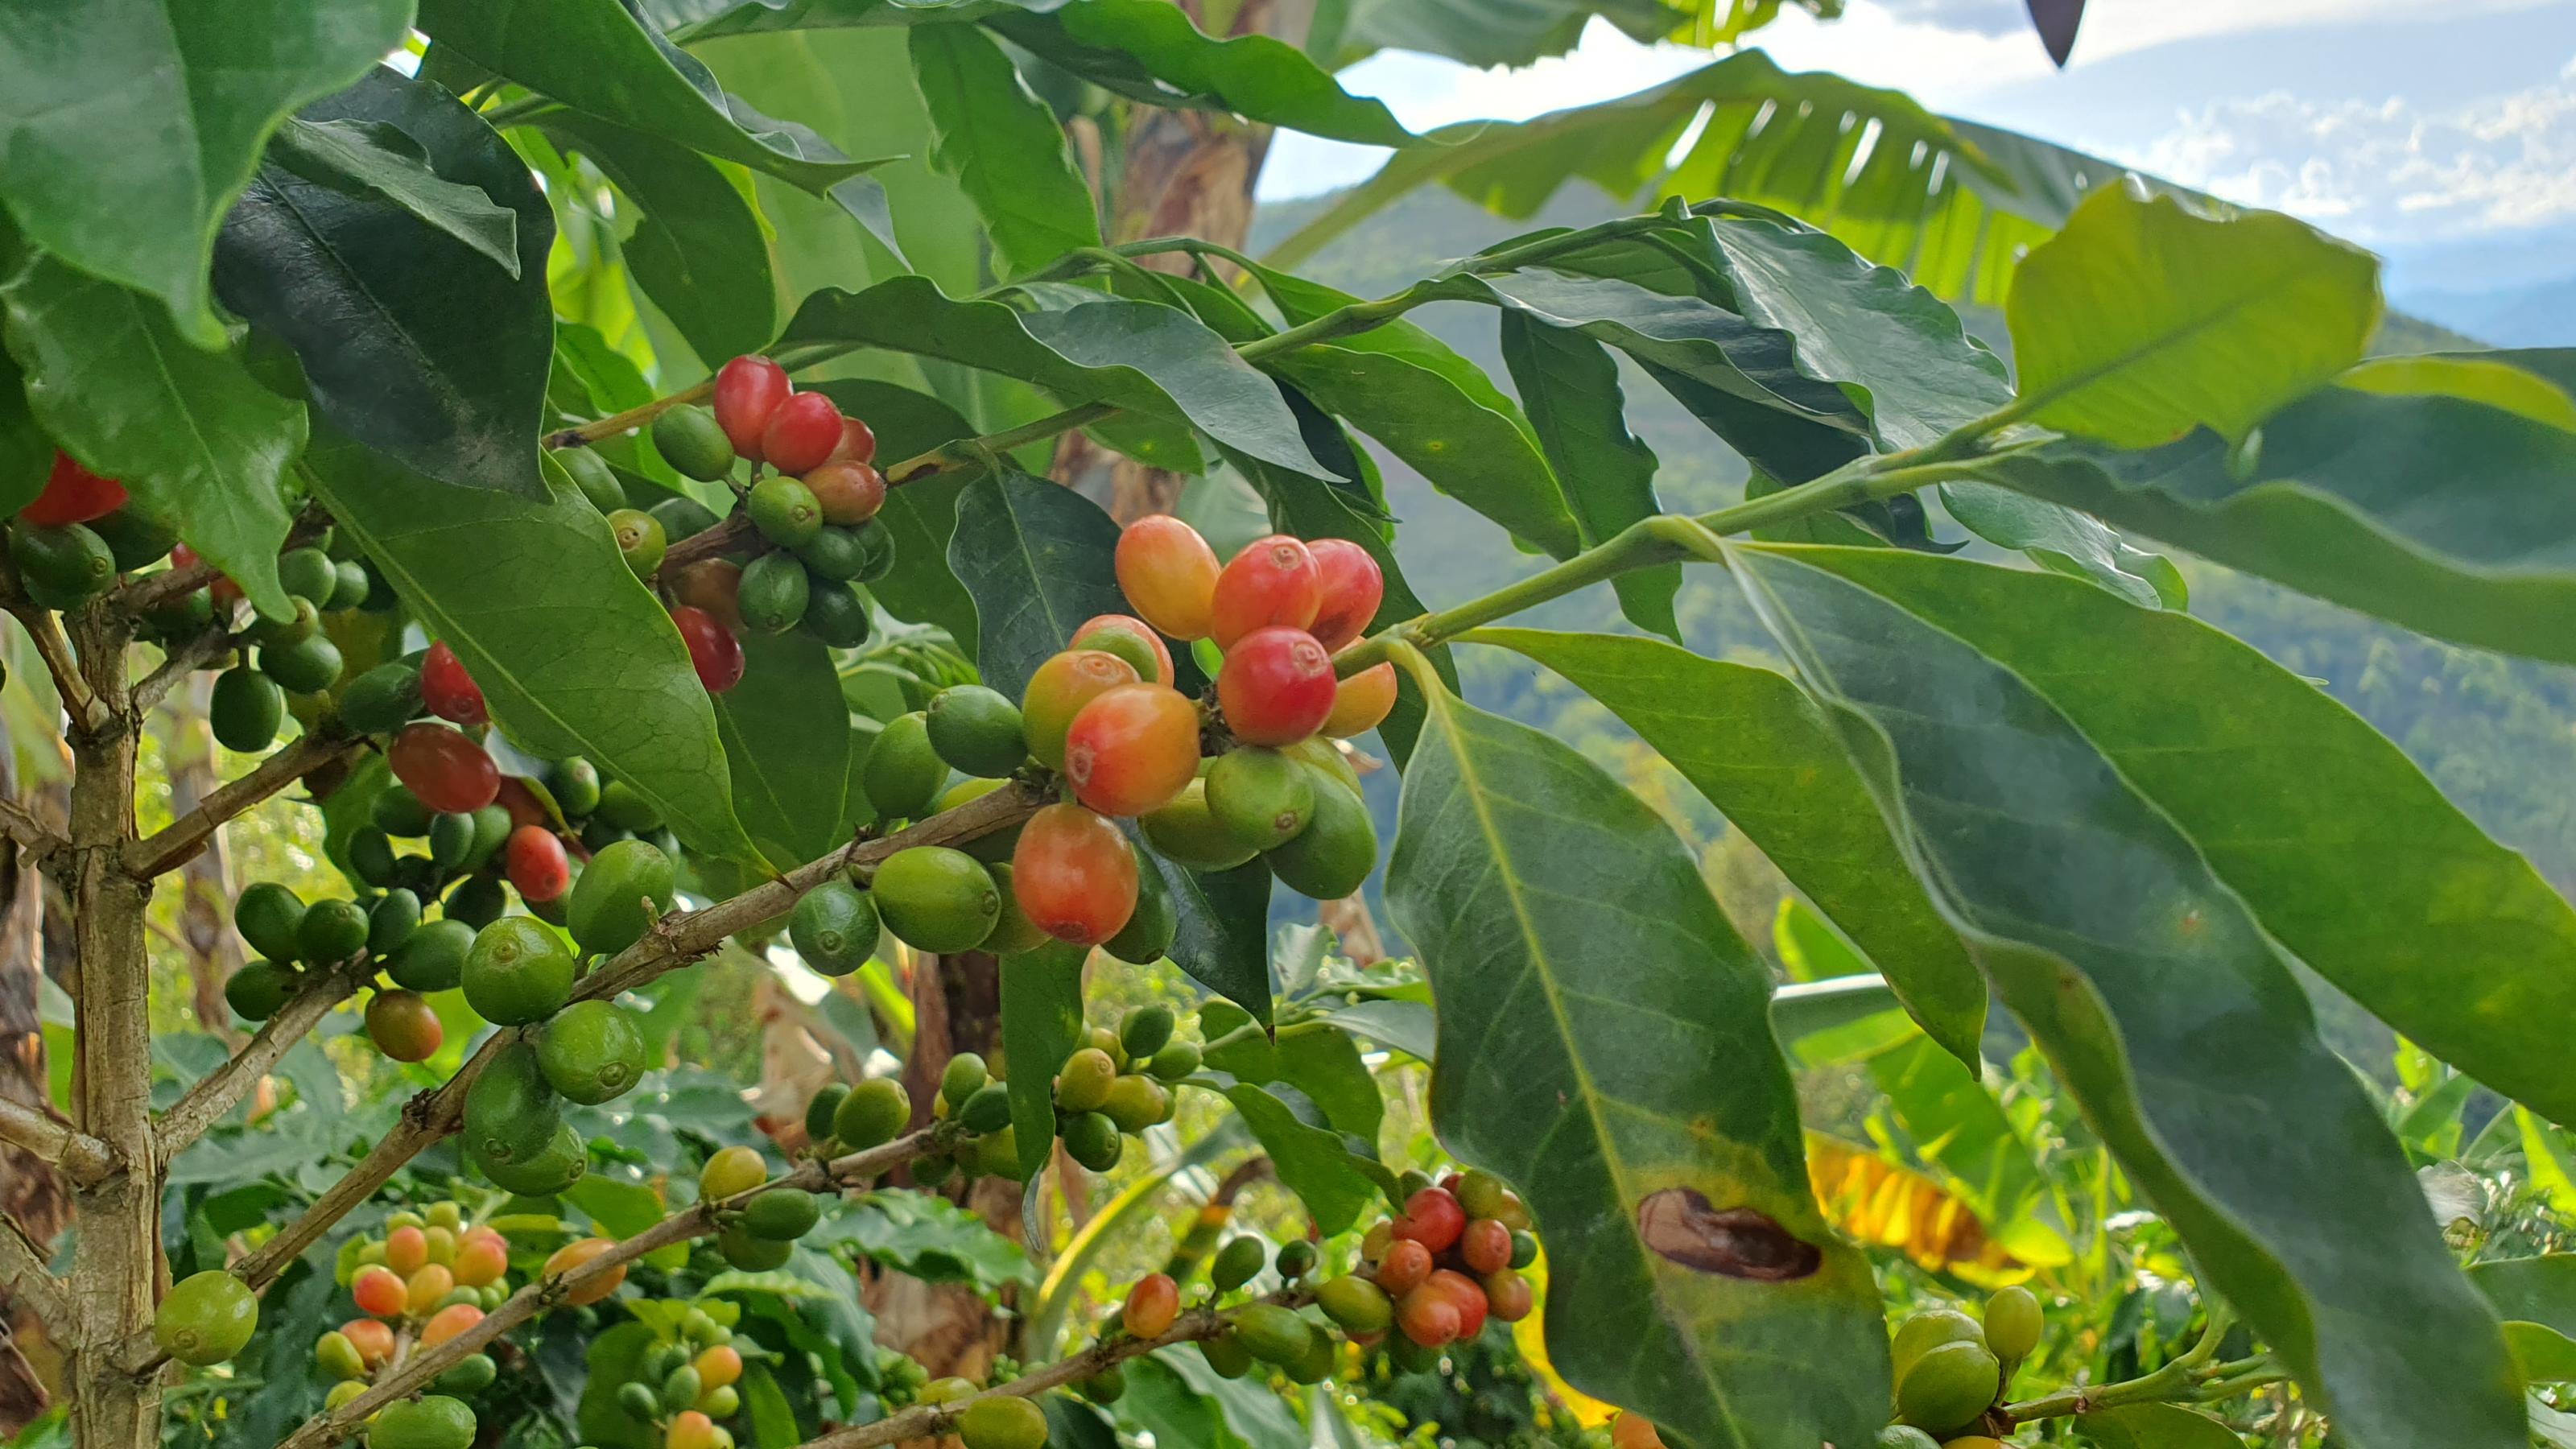 Strauch mit grünen Blättern und gelben und roten haselnussgrossen Beeren, den Kakaobohnen.